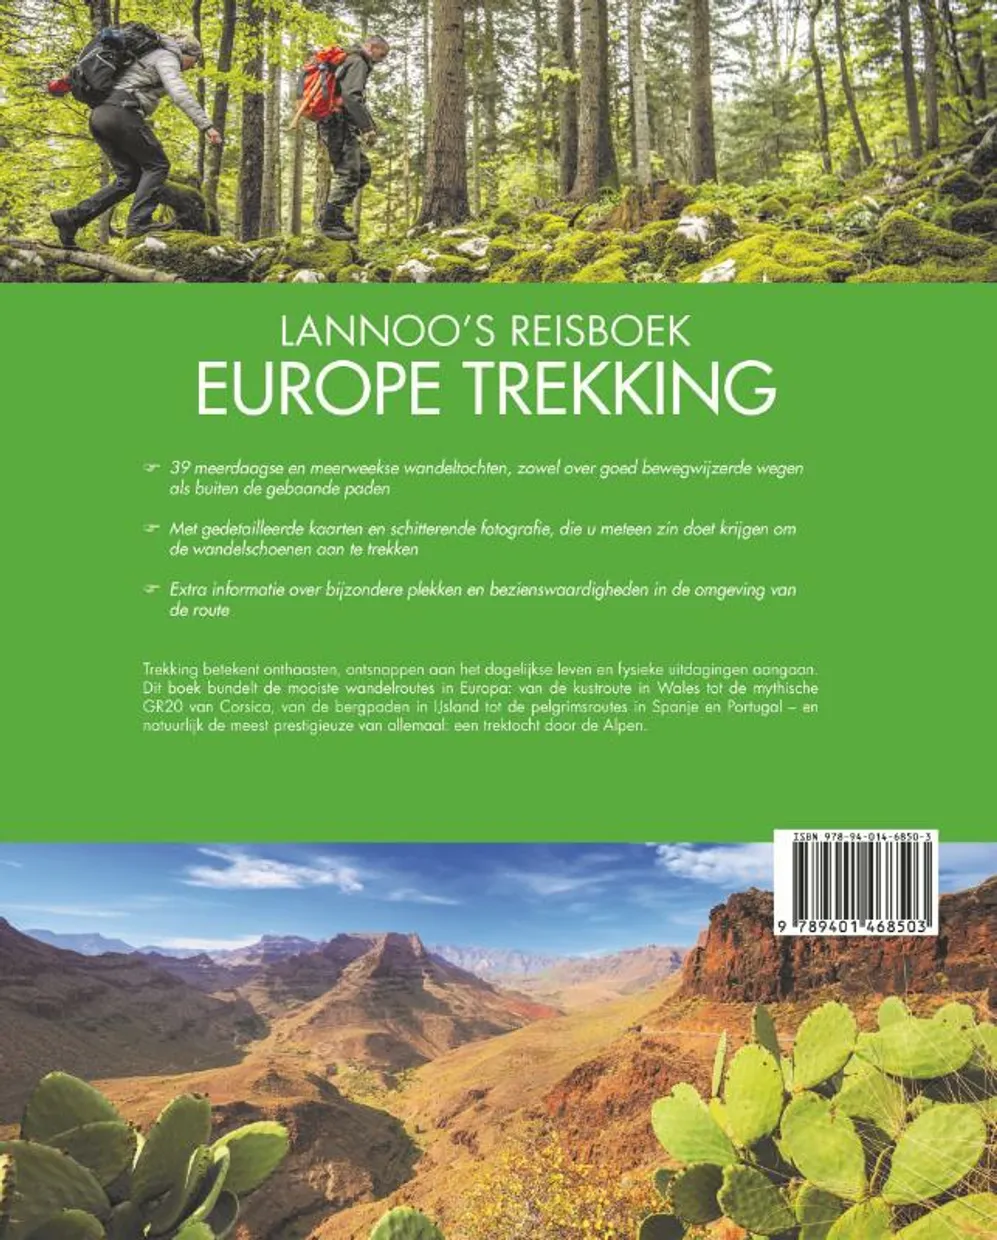 Lannoo's Reisboek Europe Trekking